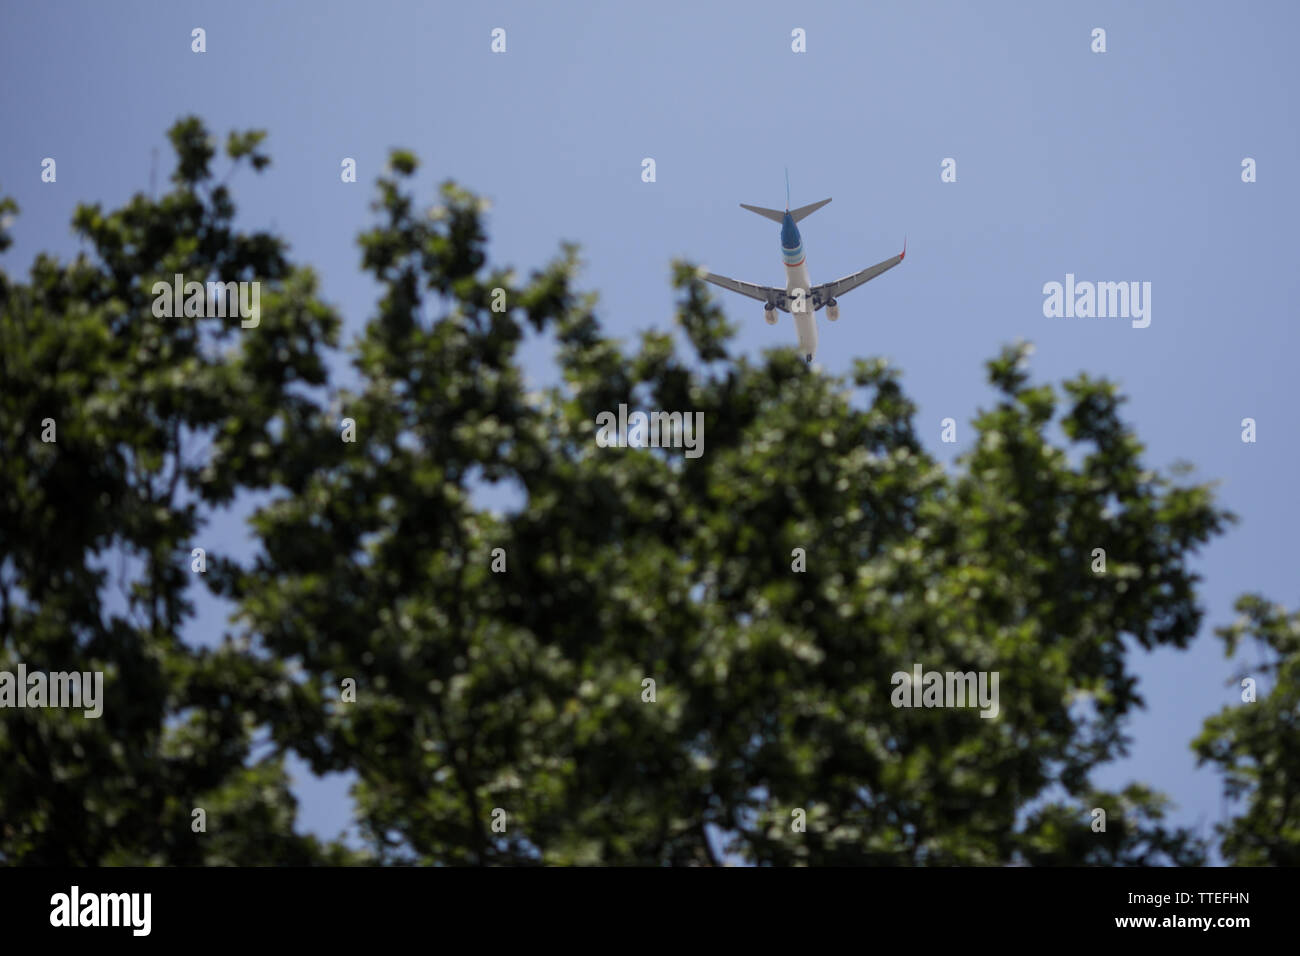 Kommerzielle Fluglinie Flugzeug kann fliegen über grüne Bäume gesehen werden. Stockfoto